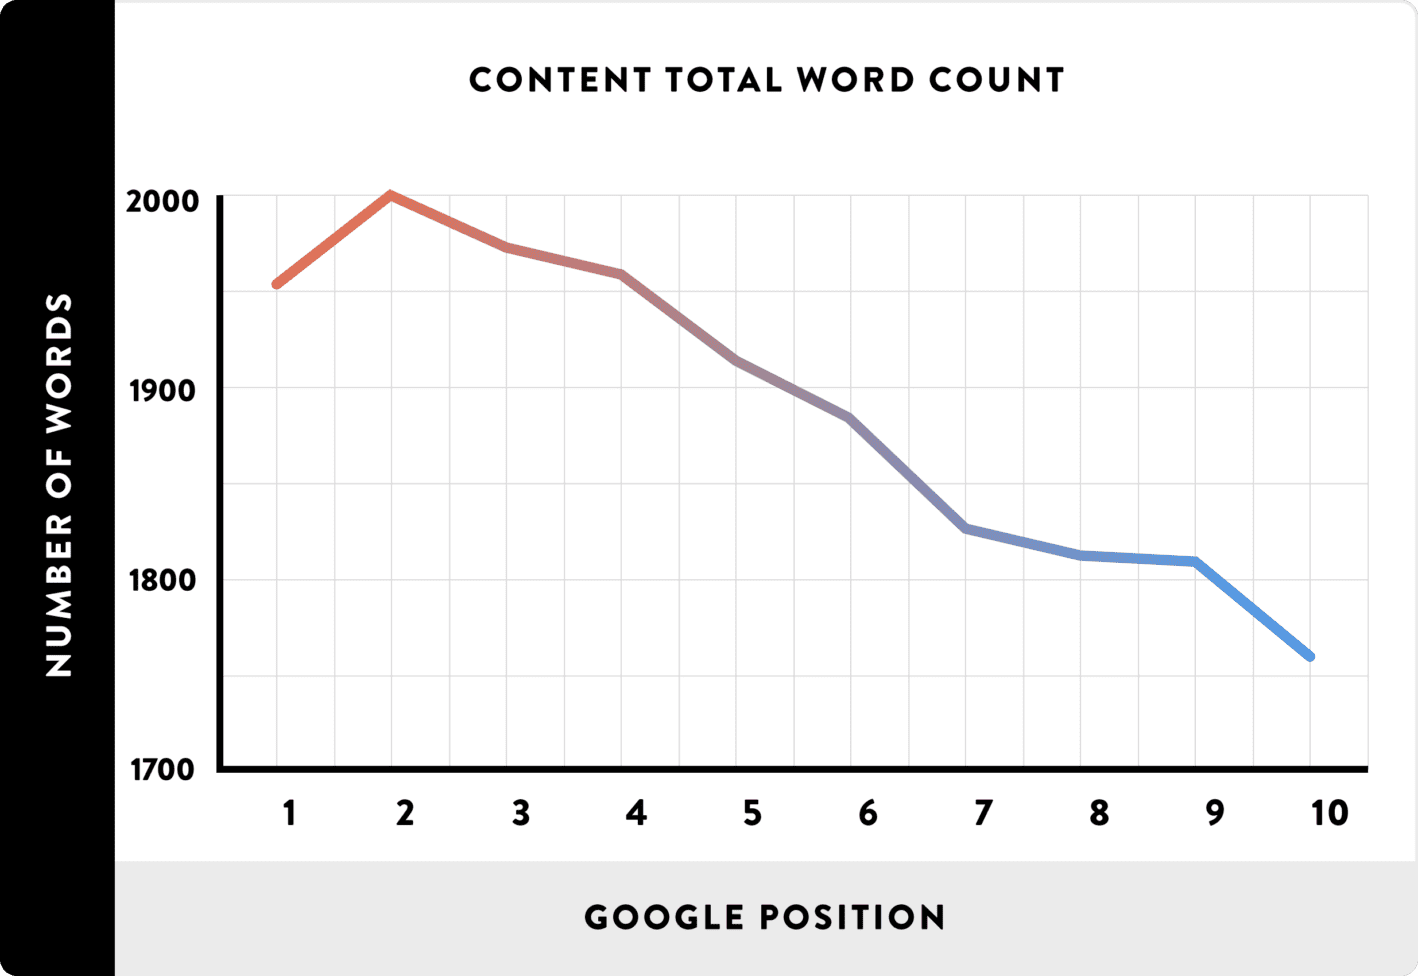 En fait, l'étude de Blacklinko sur 1 million de résultats de recherche Google a trouvé que le nombre moyen de mots d'une première page de résultats Google était de 1 890 mots.